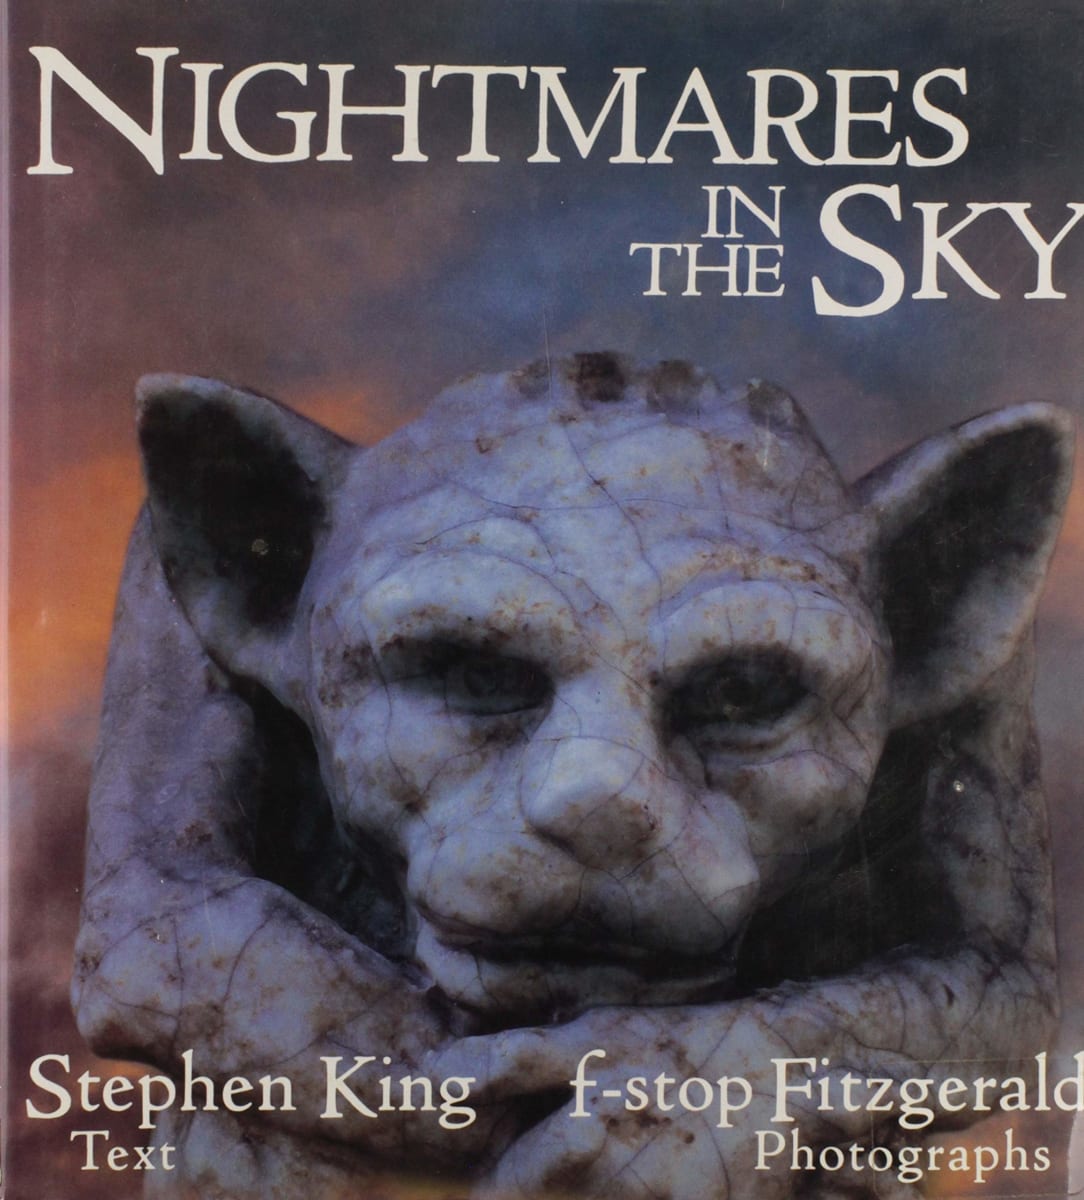 Nightmares in the Sky